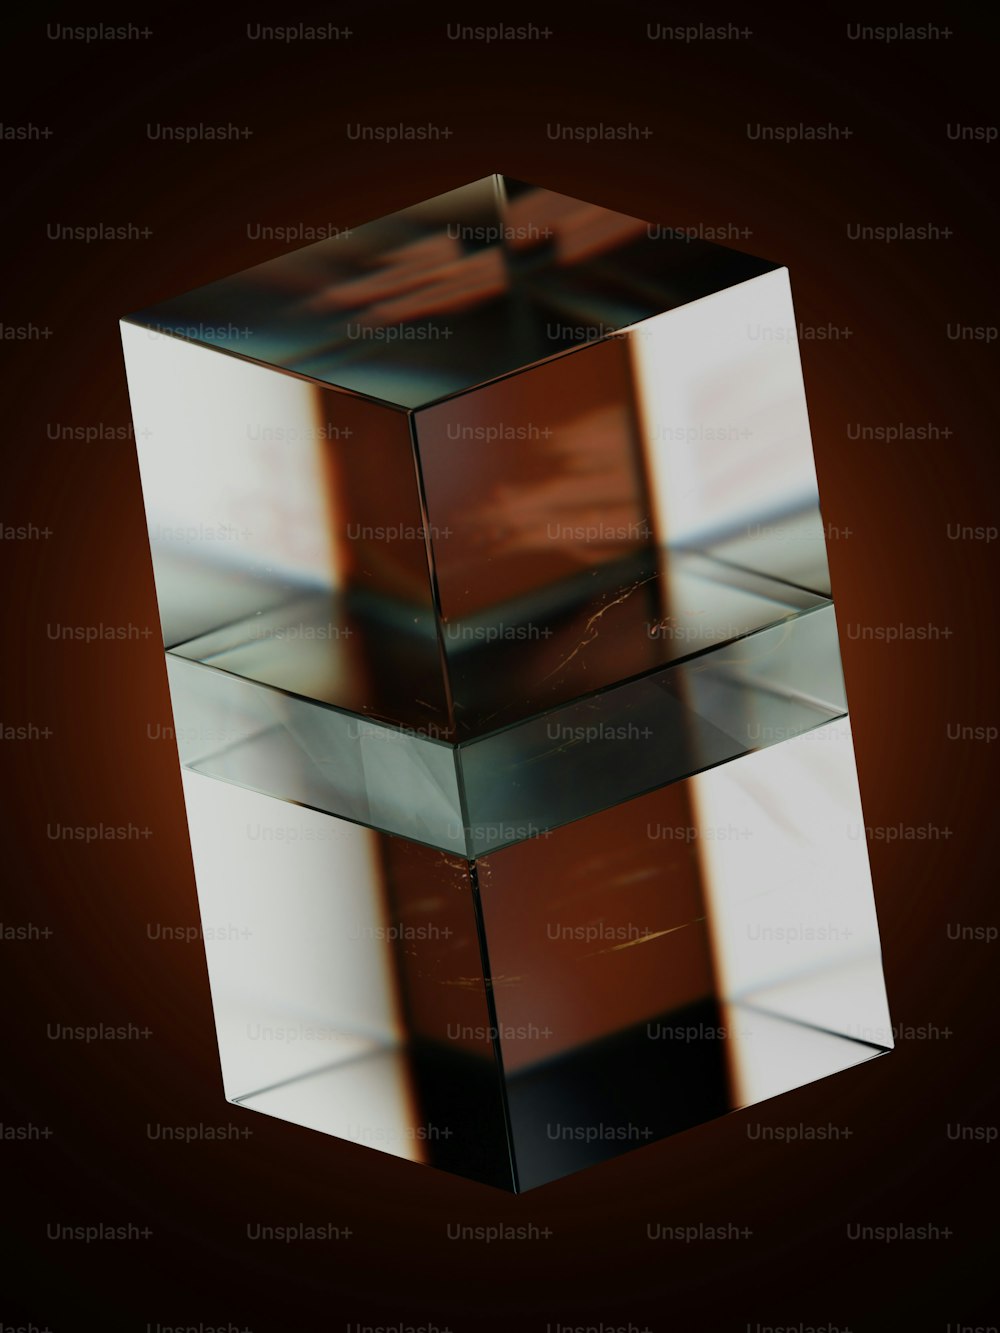 Viene visualizzato un oggetto quadrato con uno sfondo sfocato